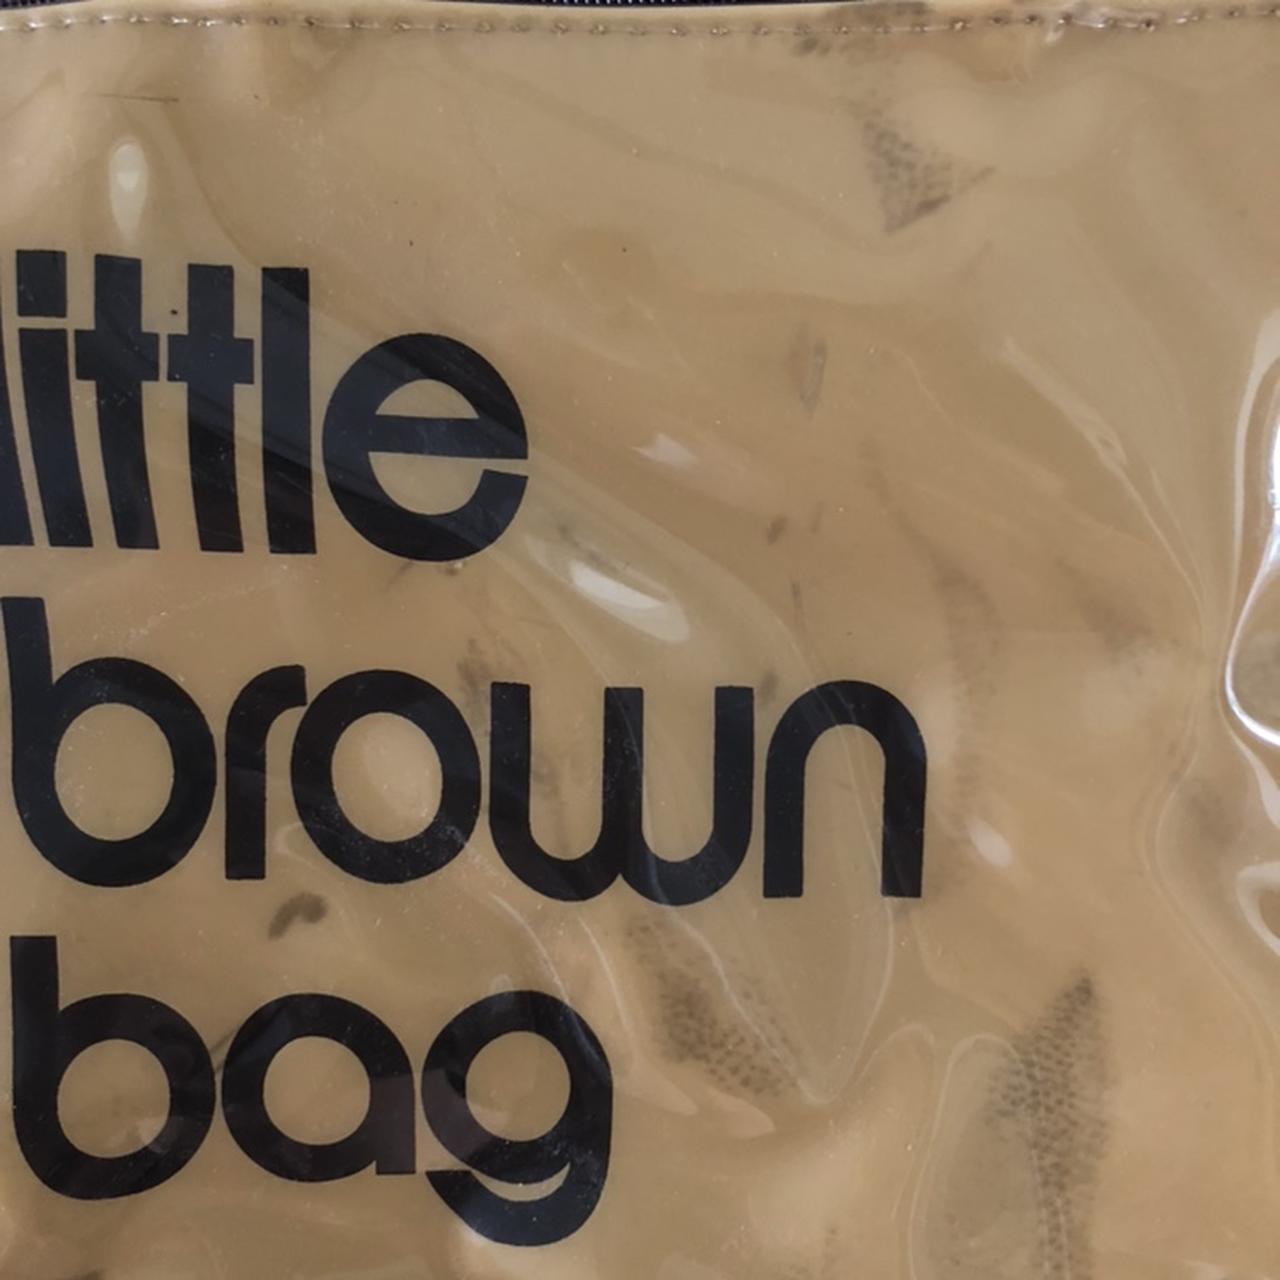 Bloomingdales Small Little Brown Tote Bag In good - Depop